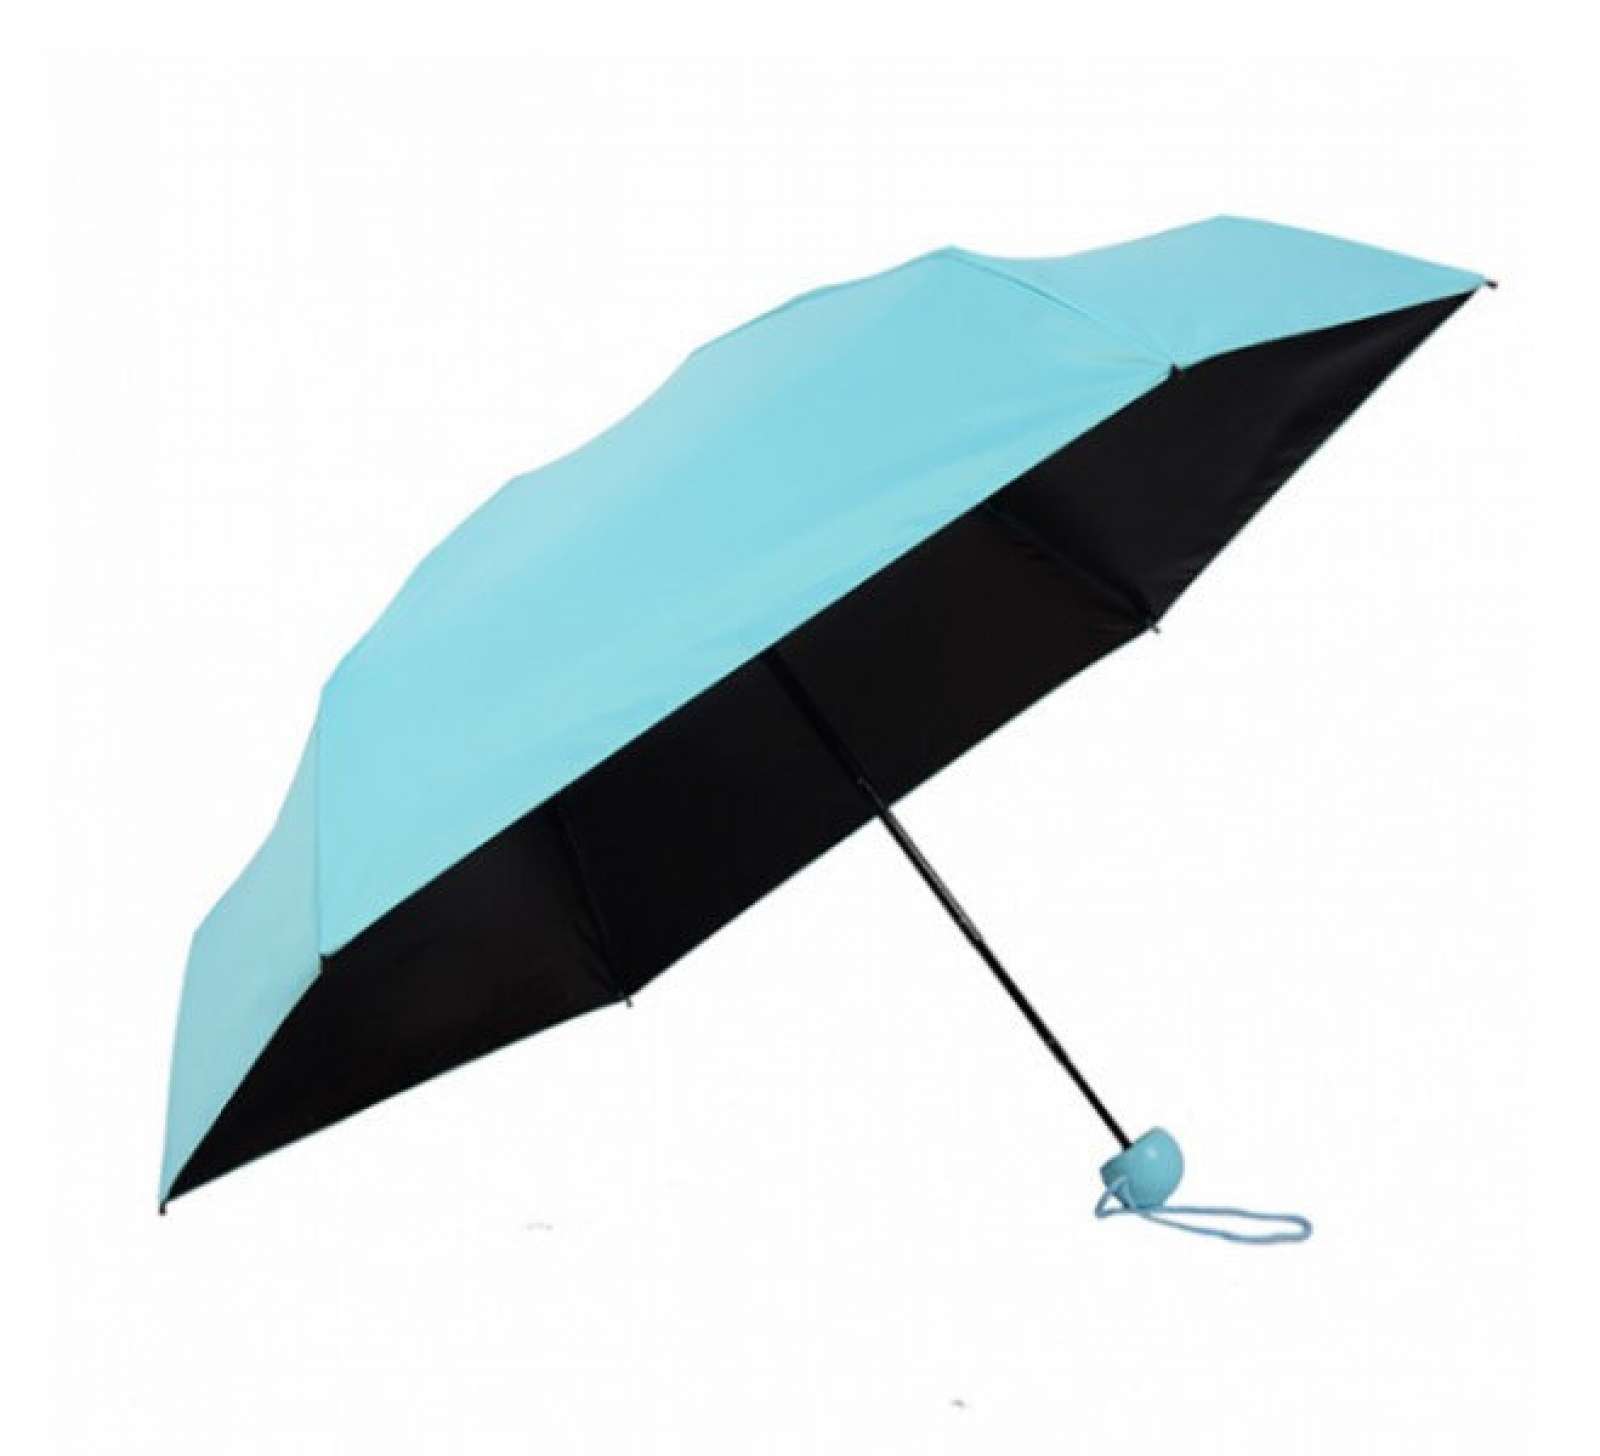 Мини зонтики. Мини зонтик. Зонтик капсула. Мини зонтик капсула. Зонт-капсула голубой.